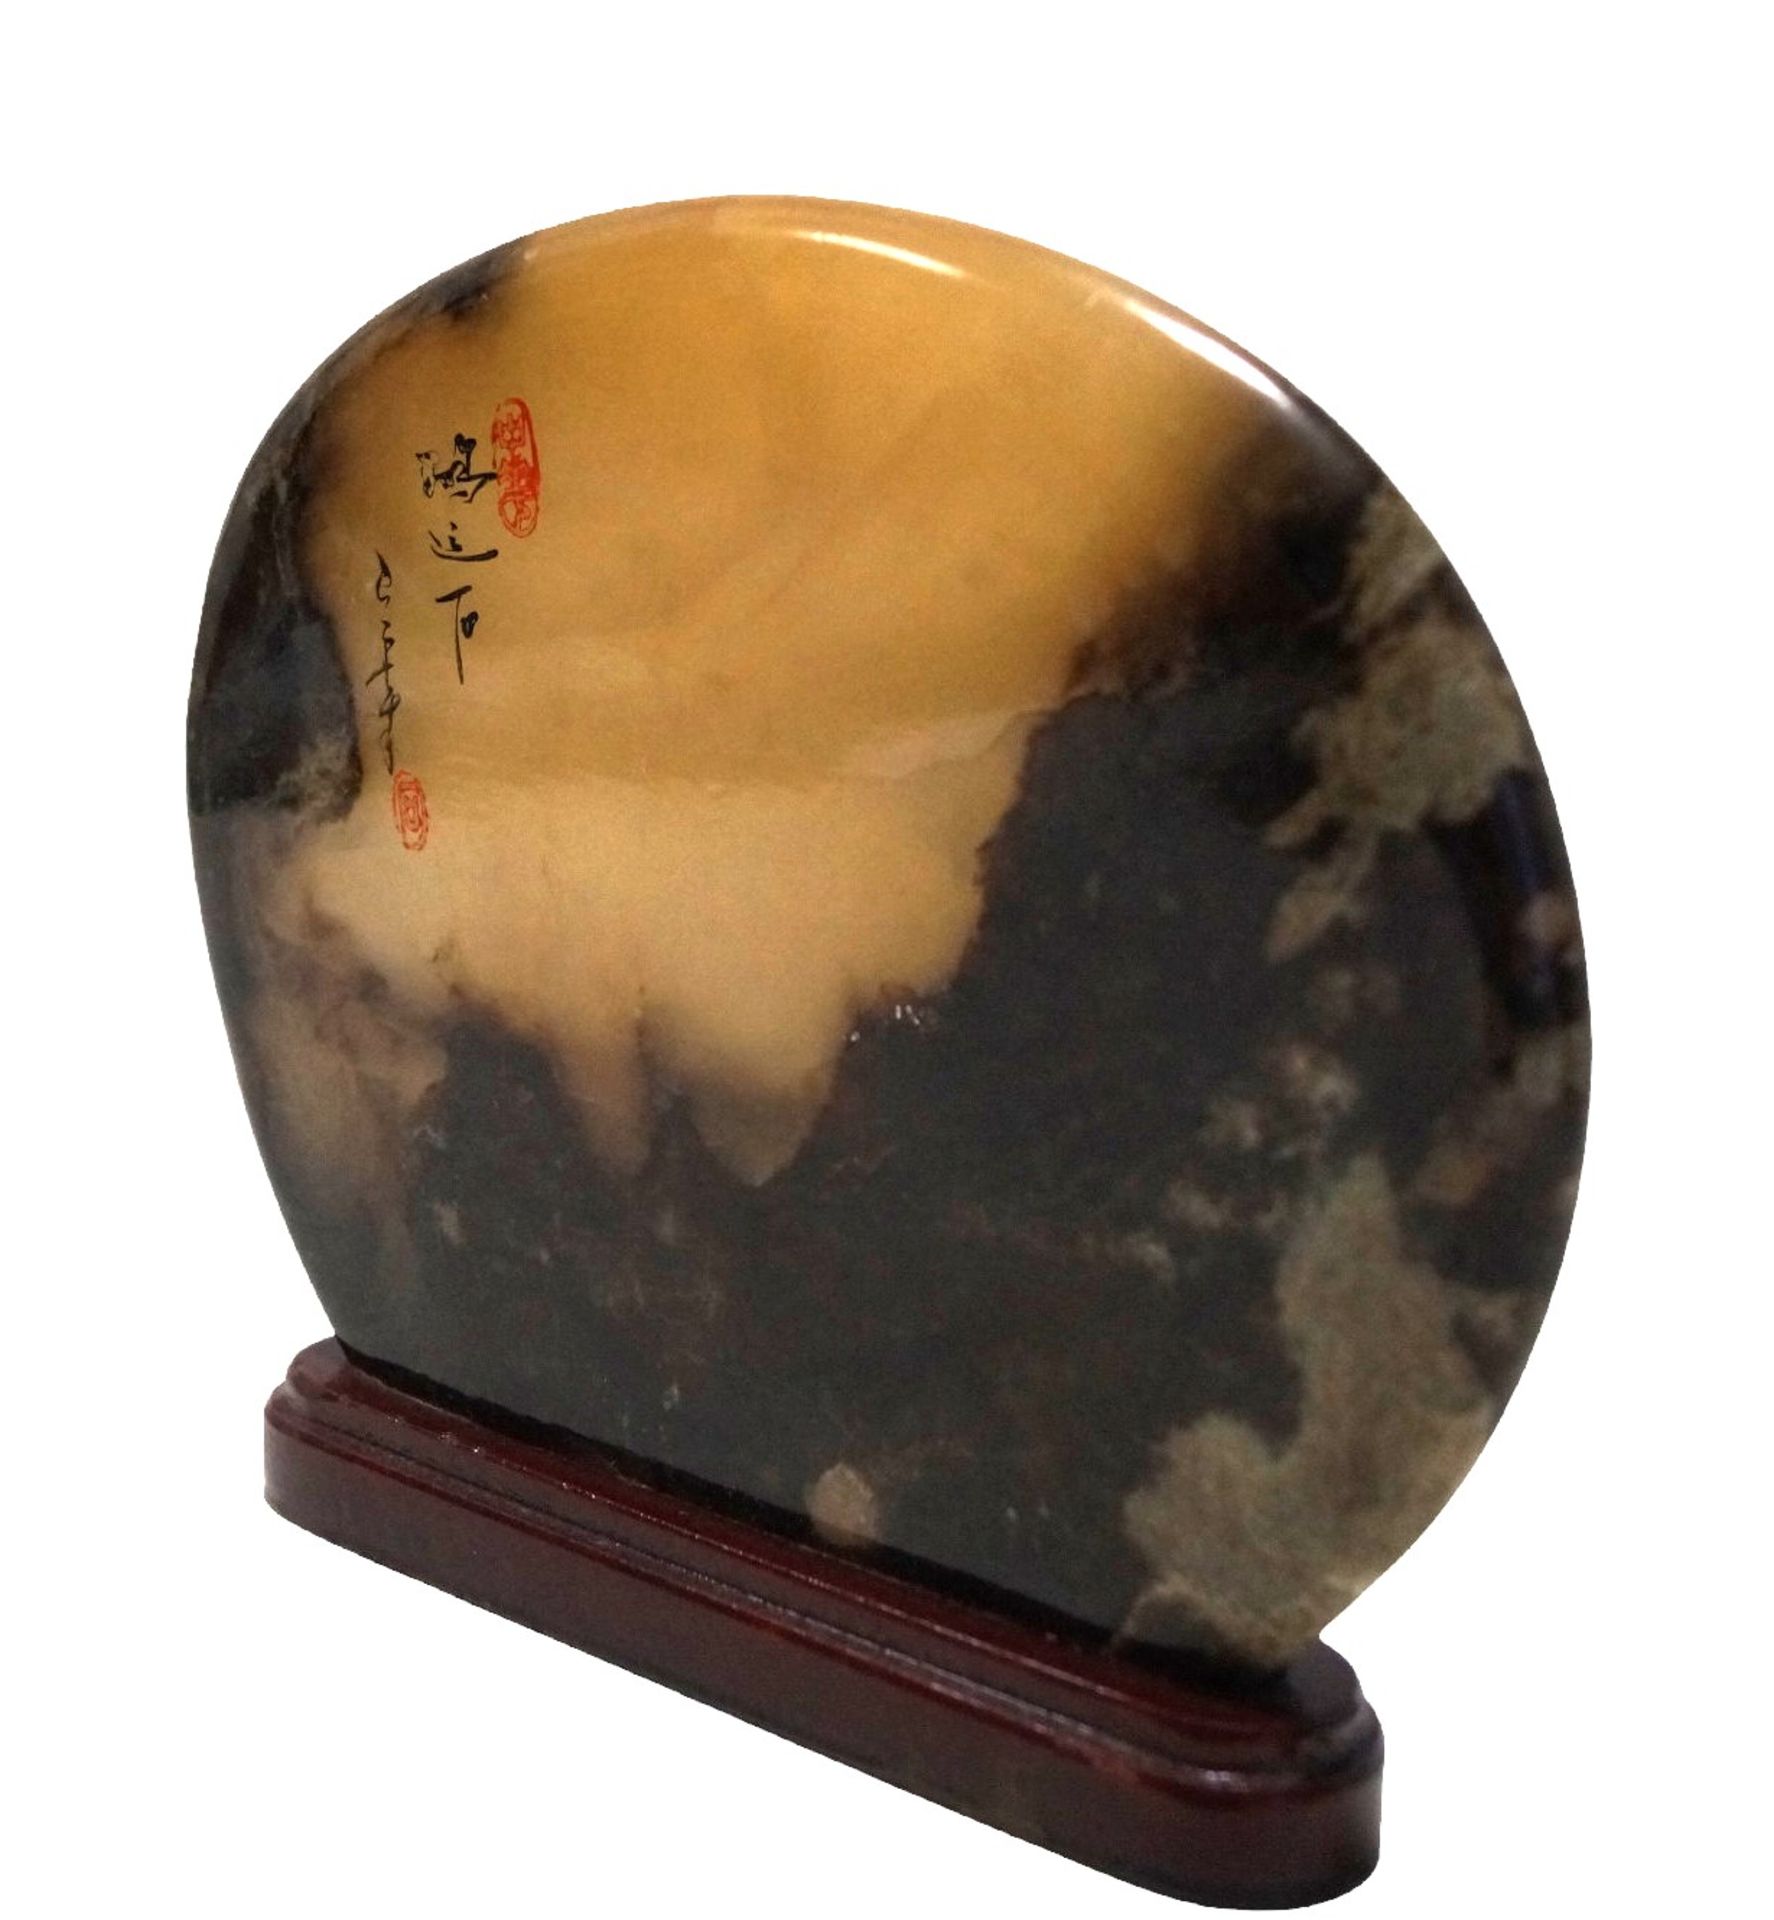 Größere Ziersteinscheibe, wohl aus Aragonit gefertigt; Oberfläche lackiert und mit asiatischen Schr - Bild 2 aus 3